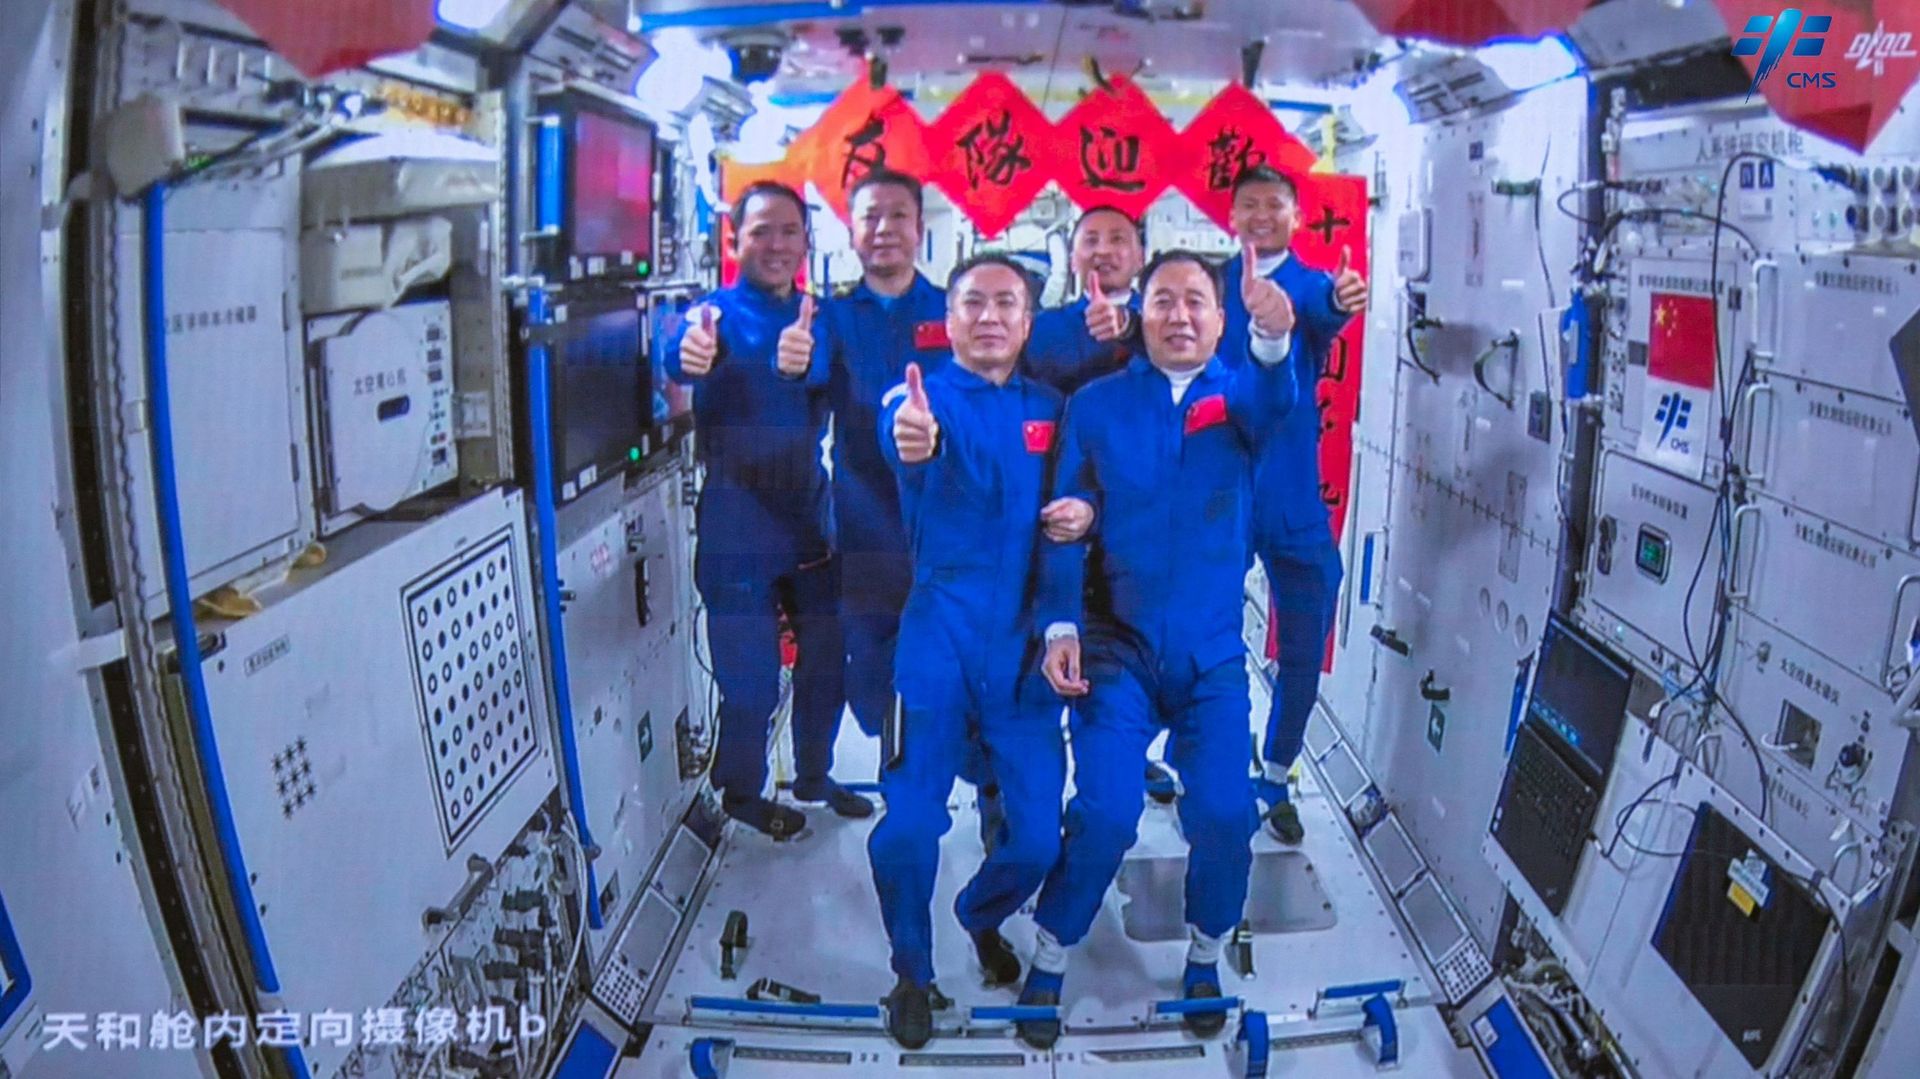 L'équipage de la mission spatiale Shenzhou-15, Fei Junlong (devant à gauche), Zhang Lu (derrière à gauche) et Deng Qingming (derrière à gauche), prend des photos avec l'équipage de la mission spatiale Shenzhou-16, Jing Haipeng (devant à droite), Gui Haich